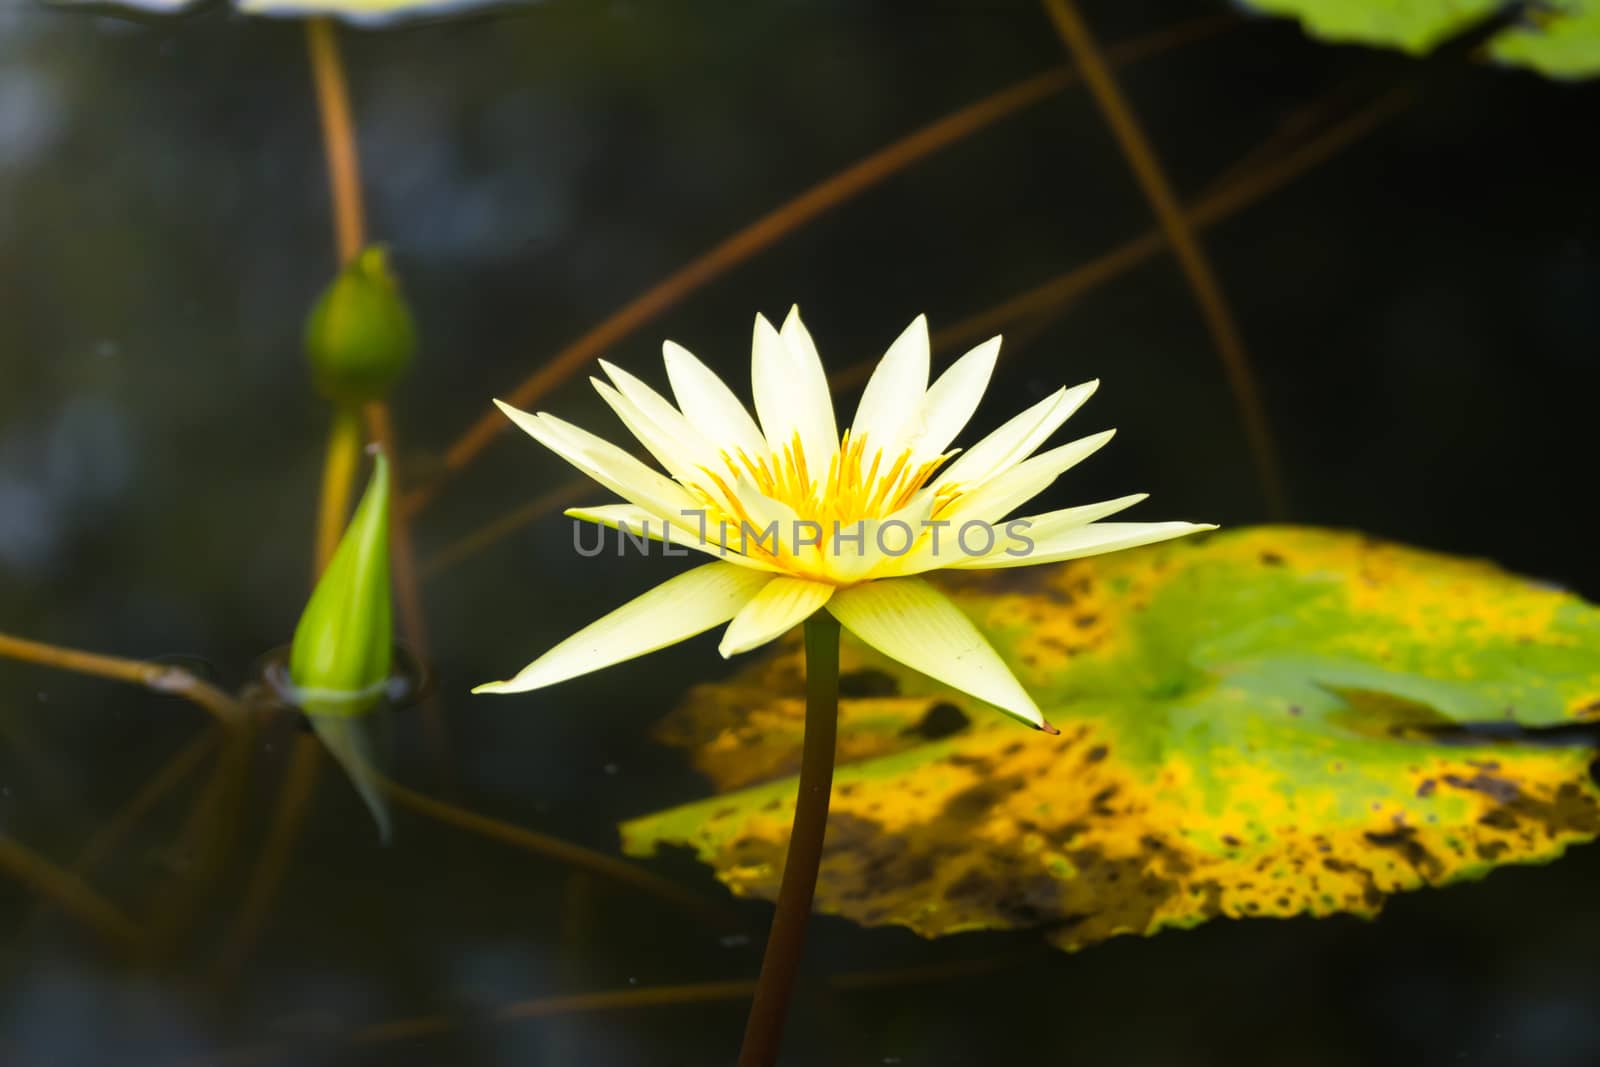 Lotus flowers blooming on the pond in summer by teerawit